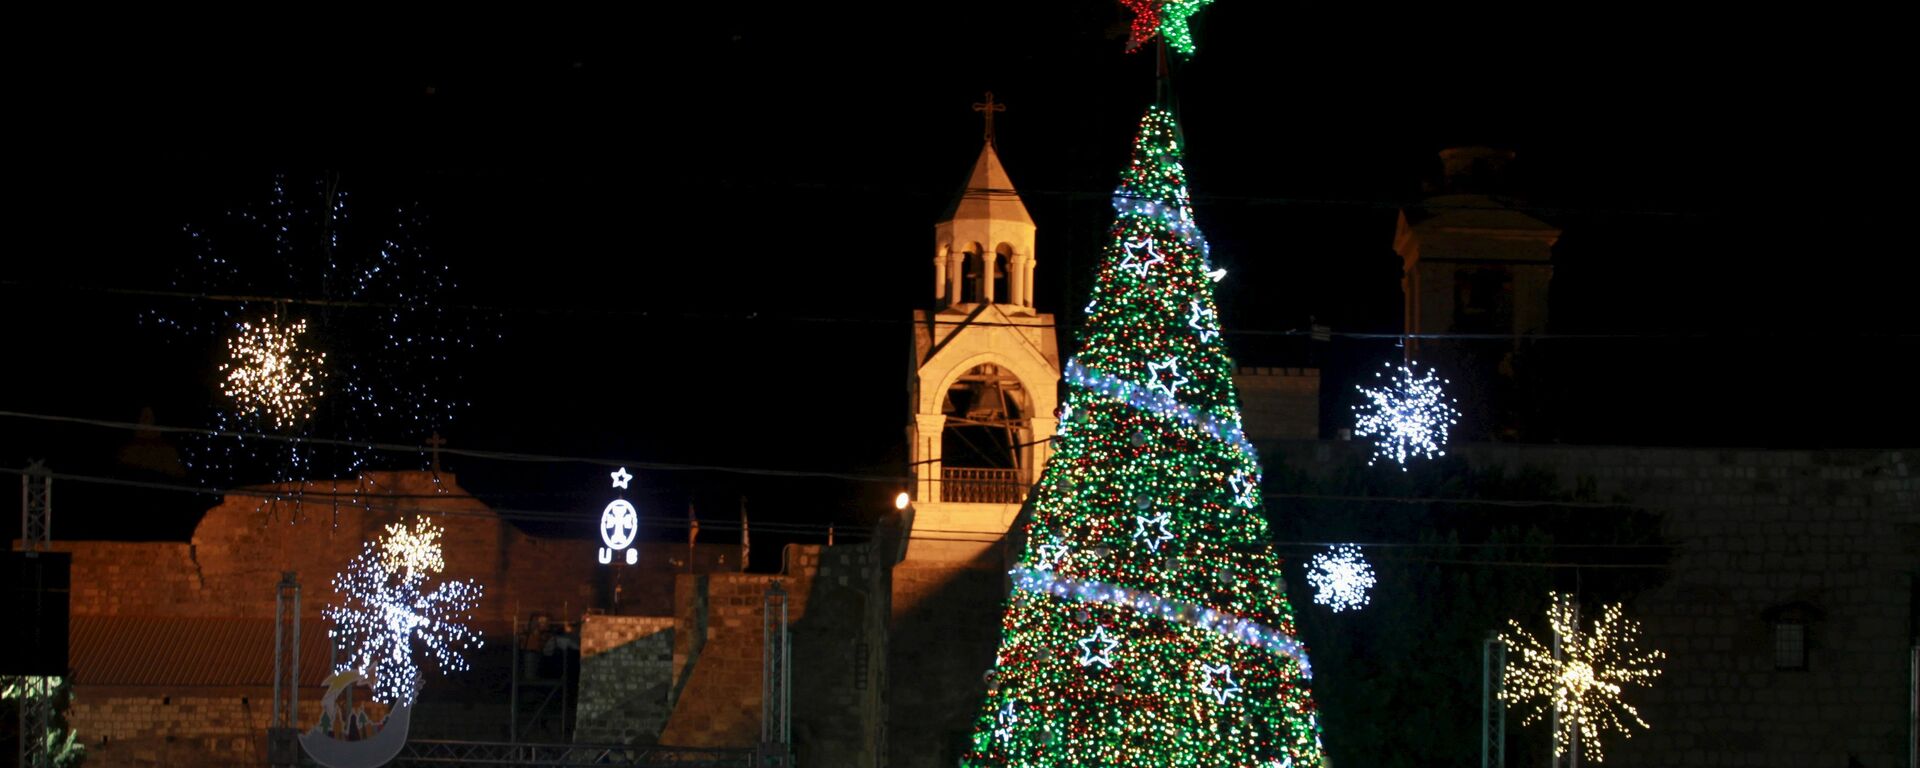 Árbol de Navidad gigante en la plaza del Pesebre en Belén (archivo) - Sputnik Mundo, 1920, 04.12.2021